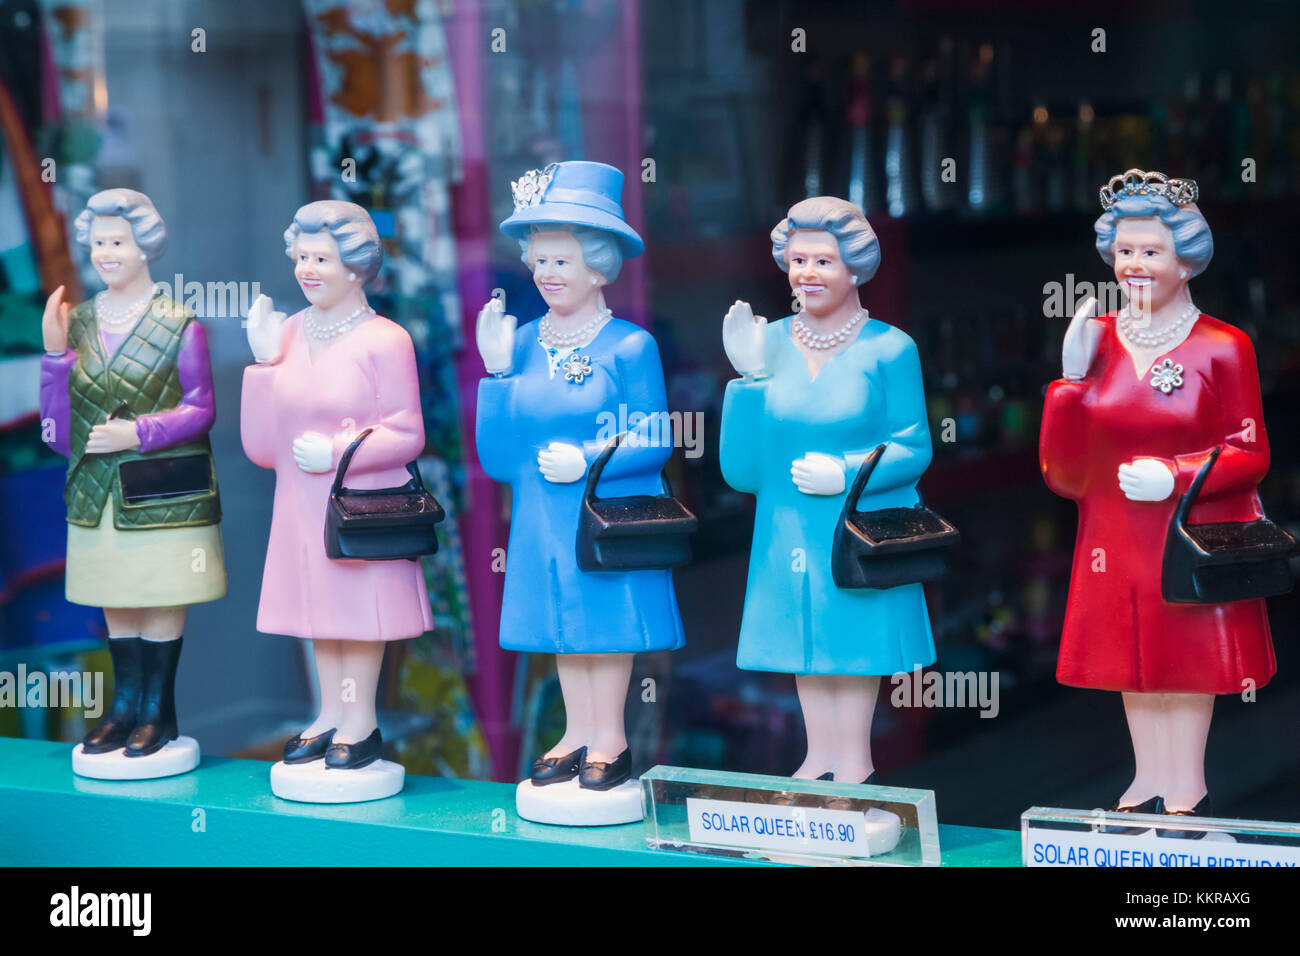 Inghilterra, Londra, nottinghill, Portobello Road, souvenir shop visualizzazione dei modelli di Queen Elizabeth II Foto Stock